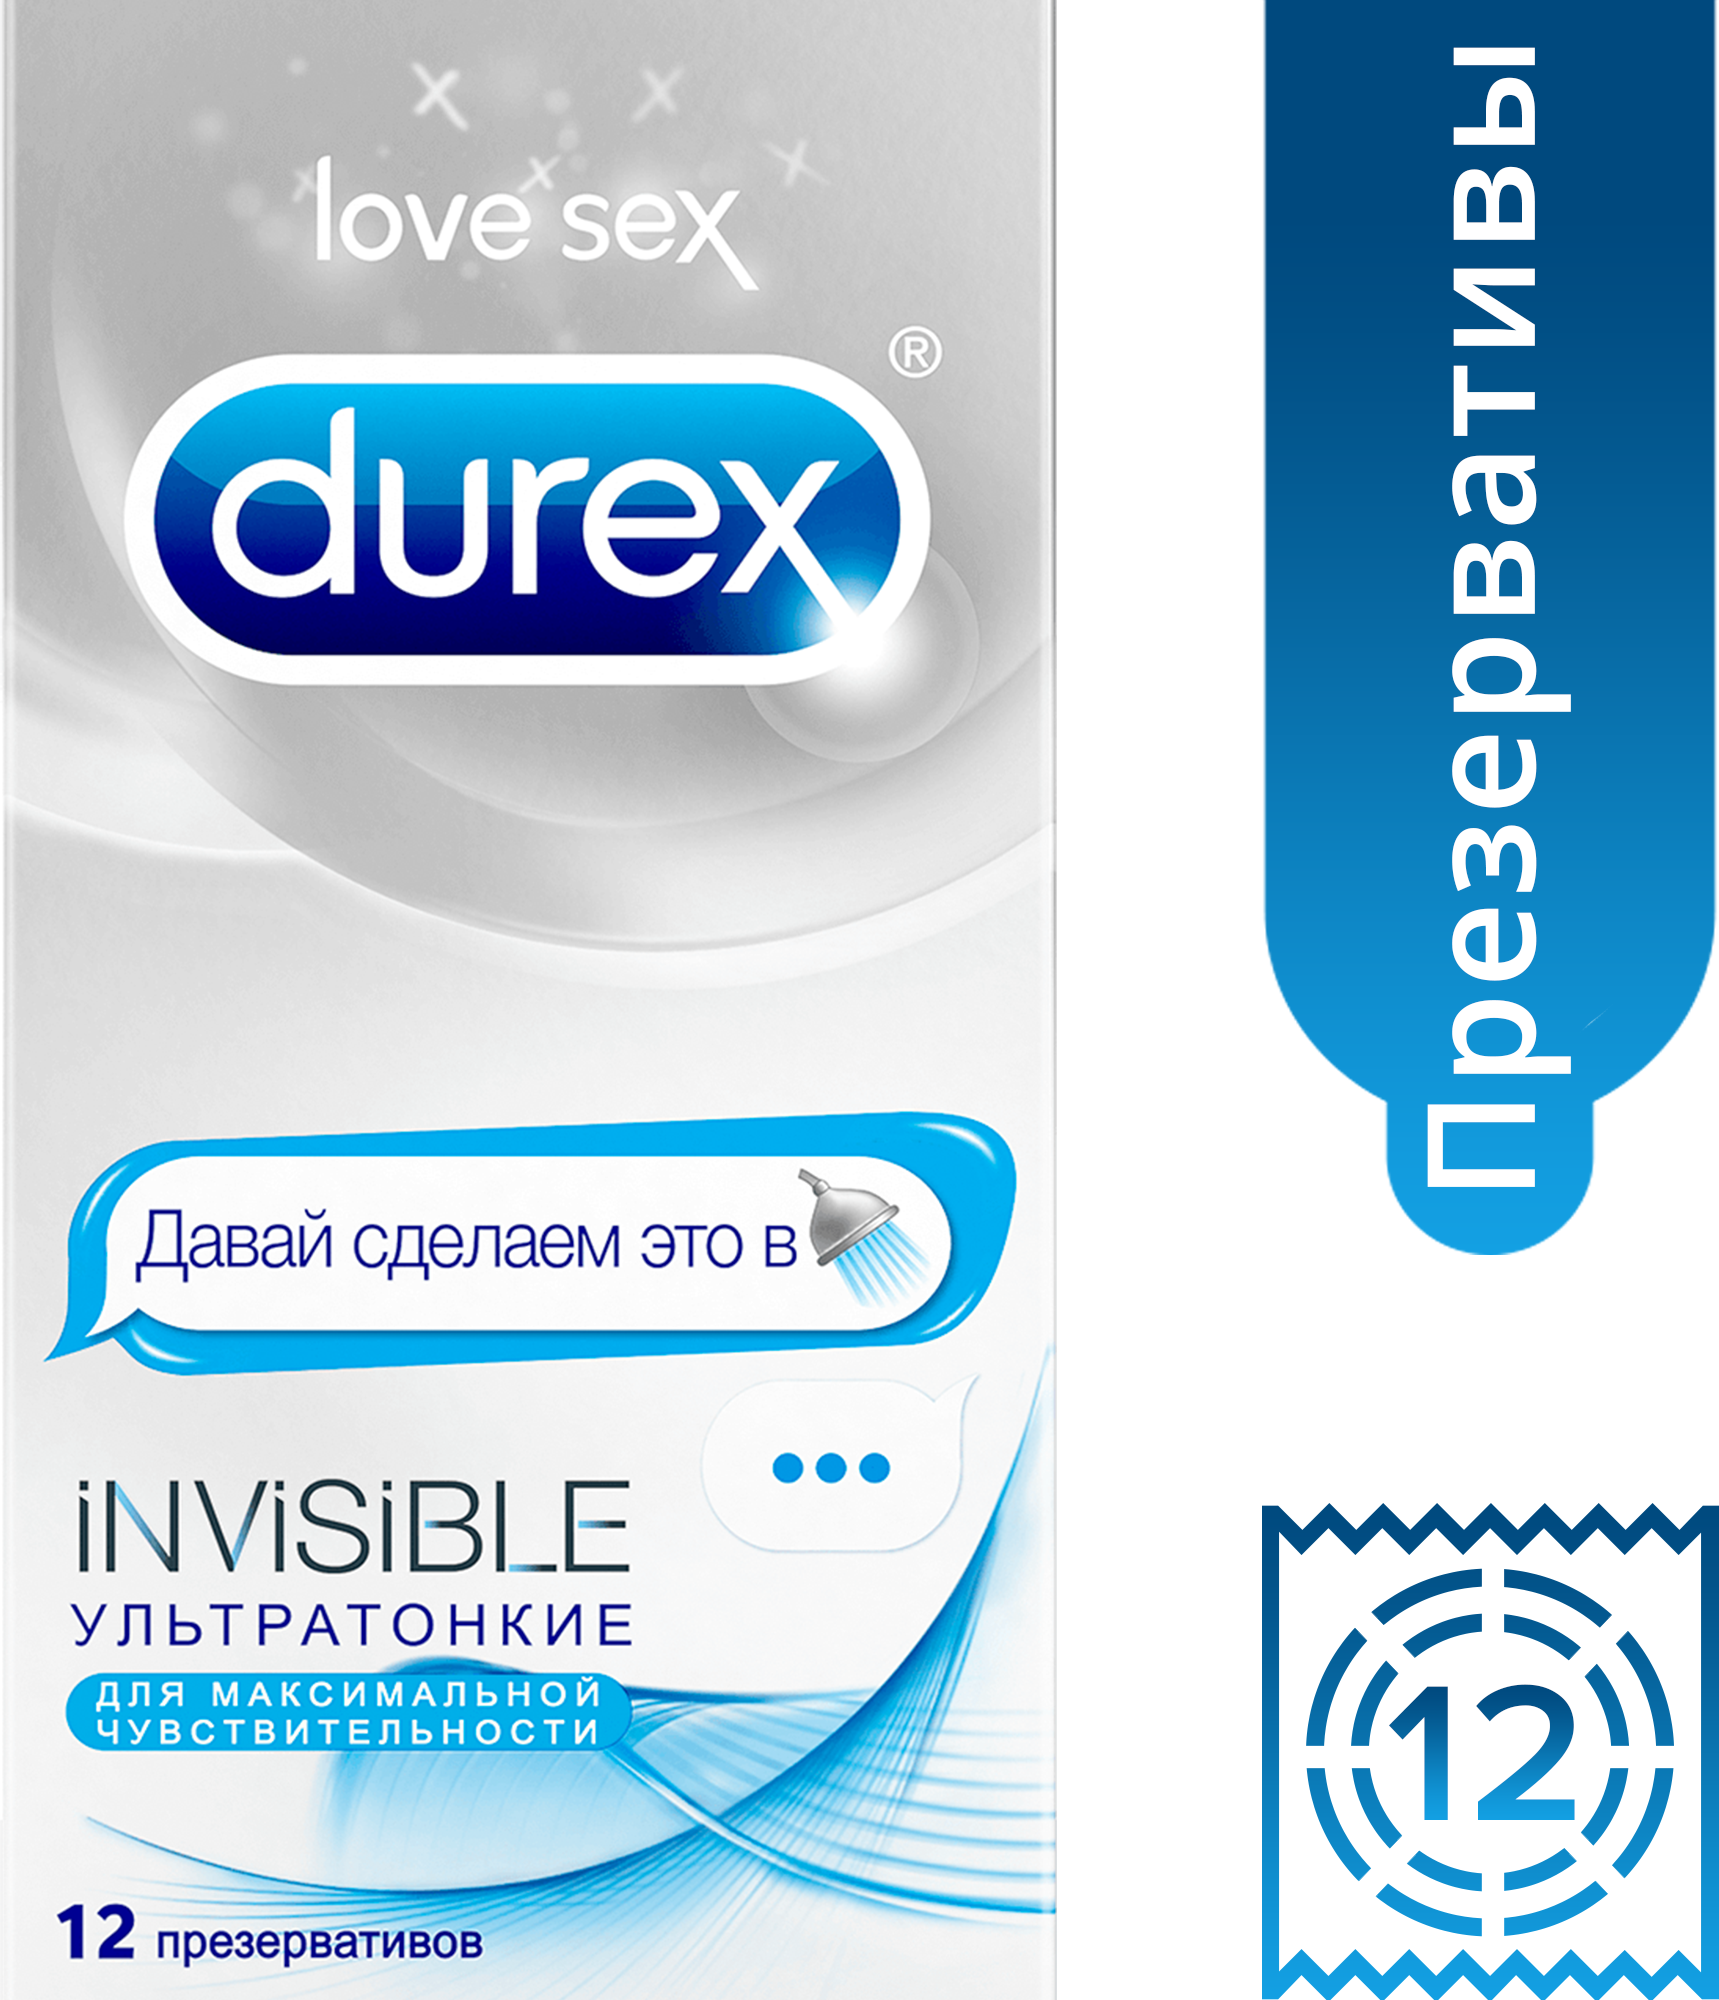 Презервативы Durex (Дюрекс) Invisible ультратонкие 12 шт. doodle Рекитт Бенкизер Хелскэр (ЮК) Лтд - фото №14